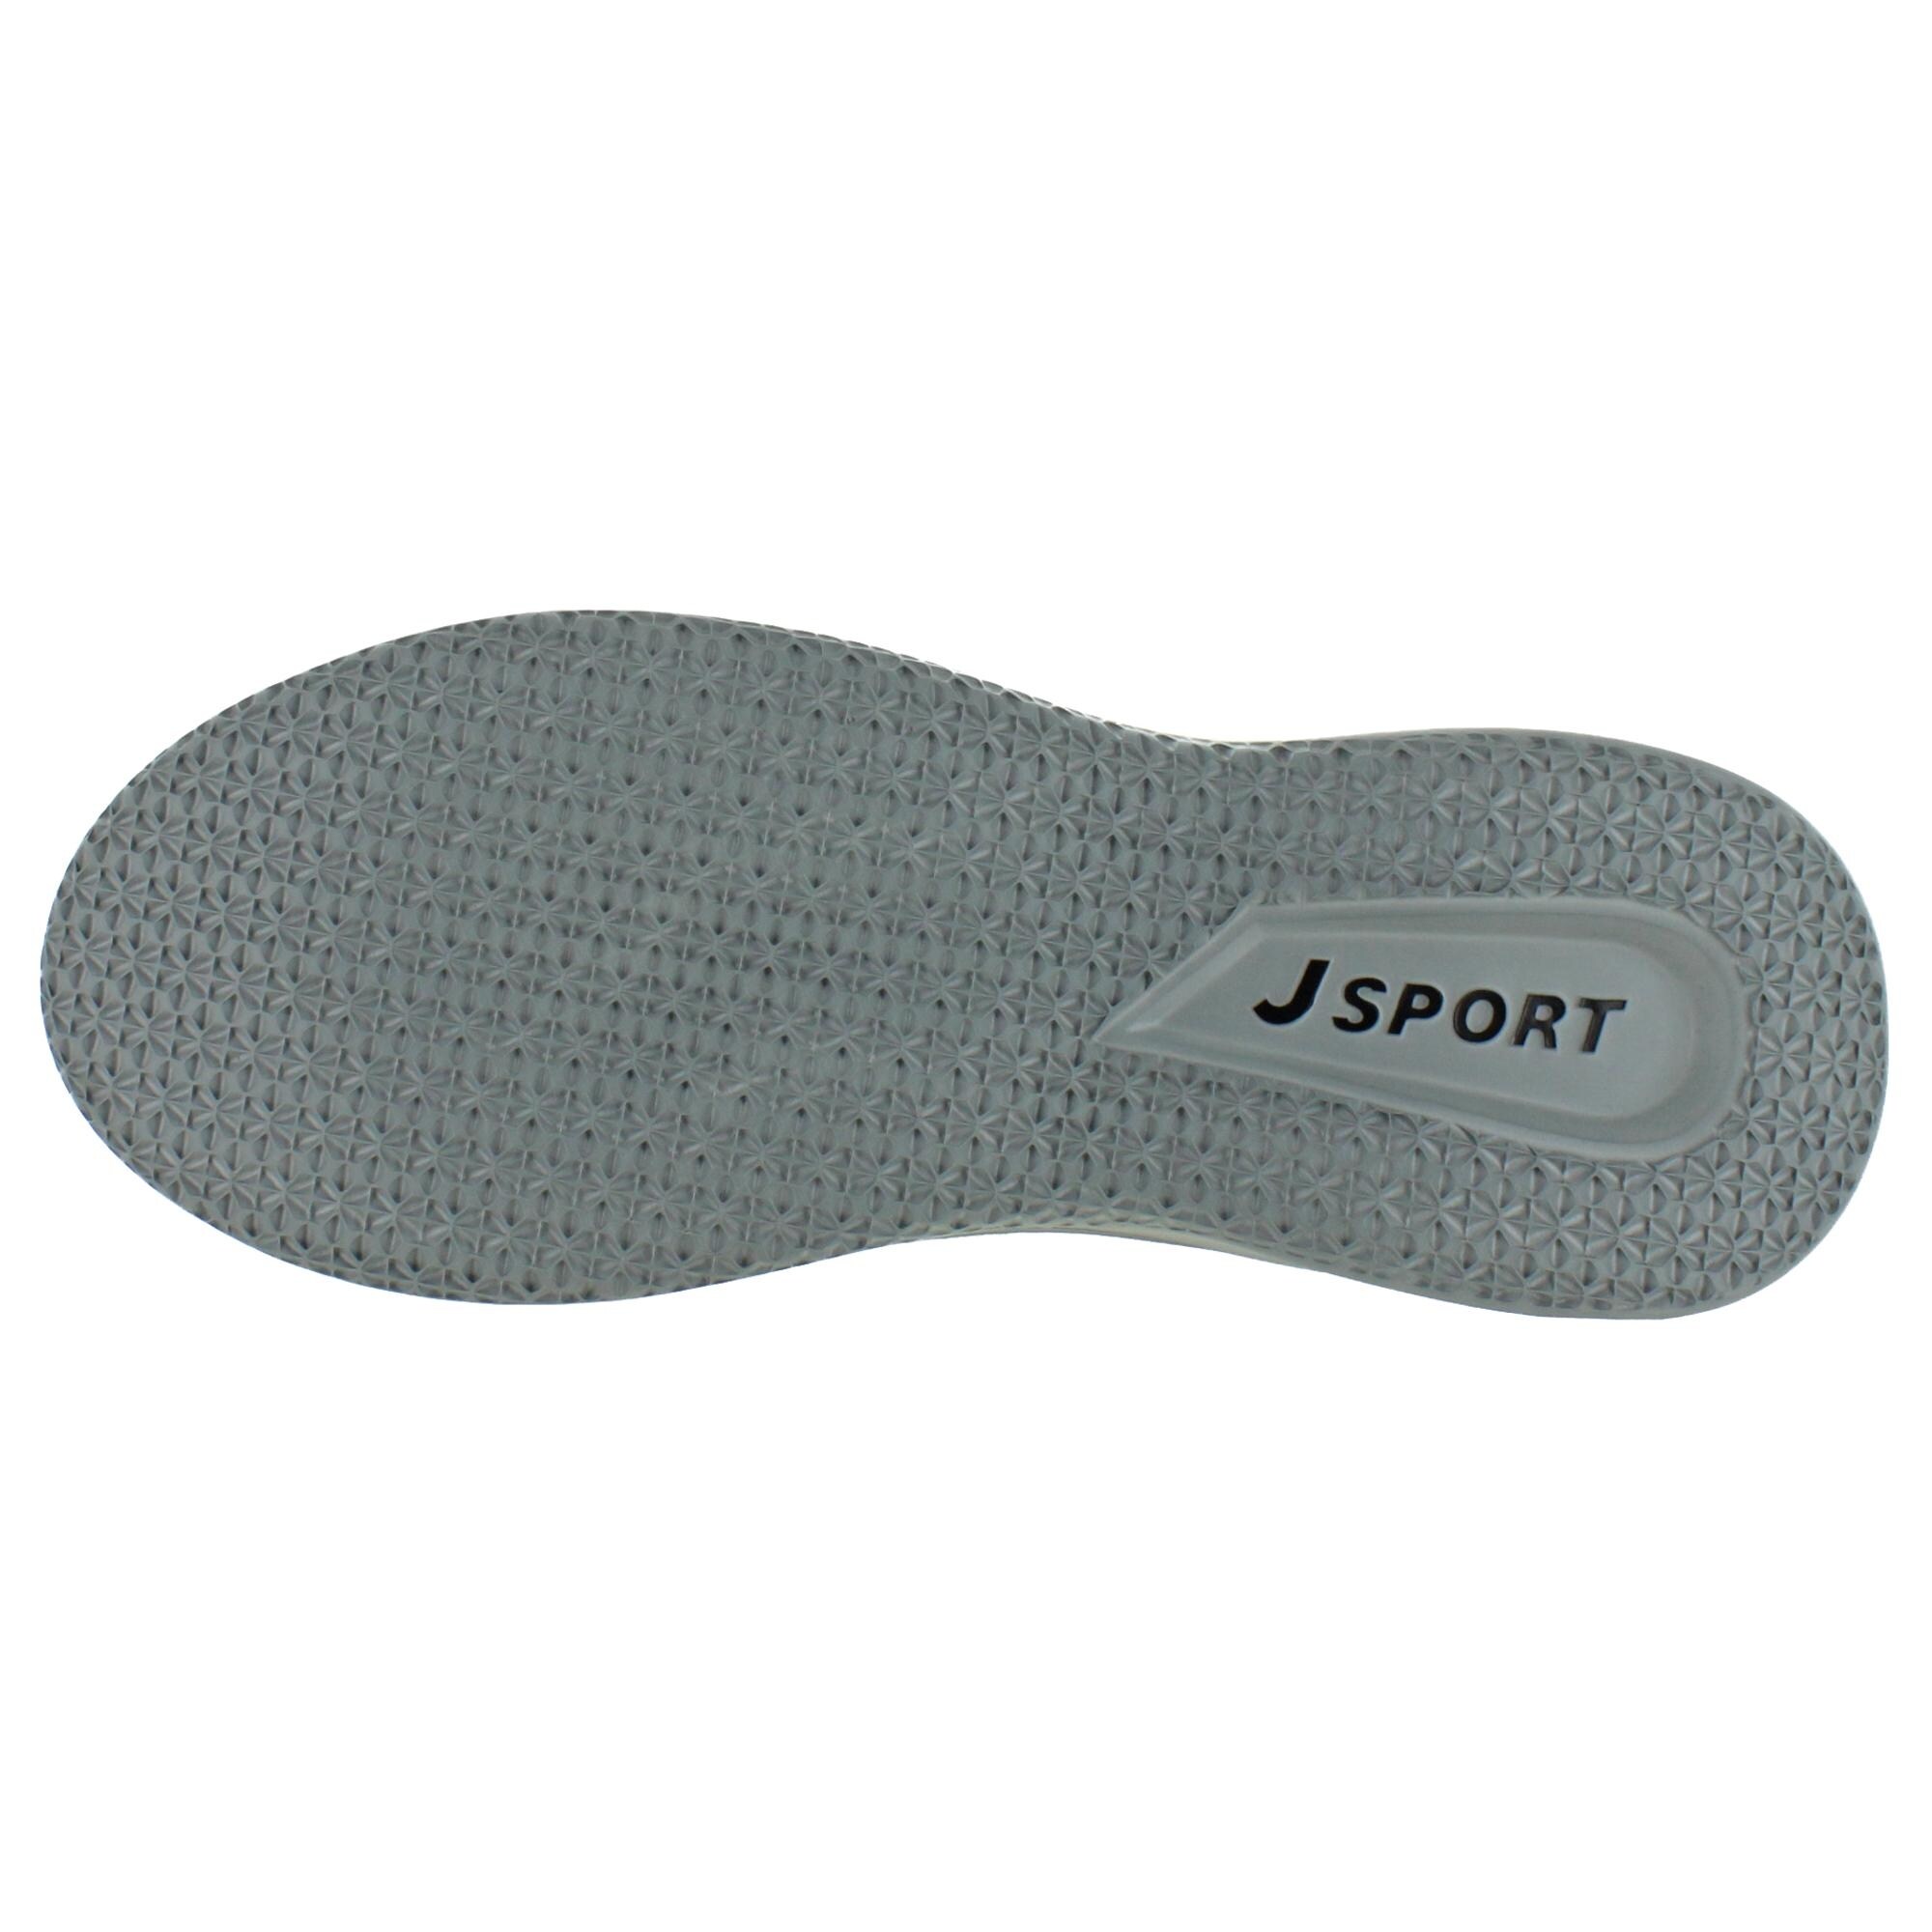 jsport memory foam shoes